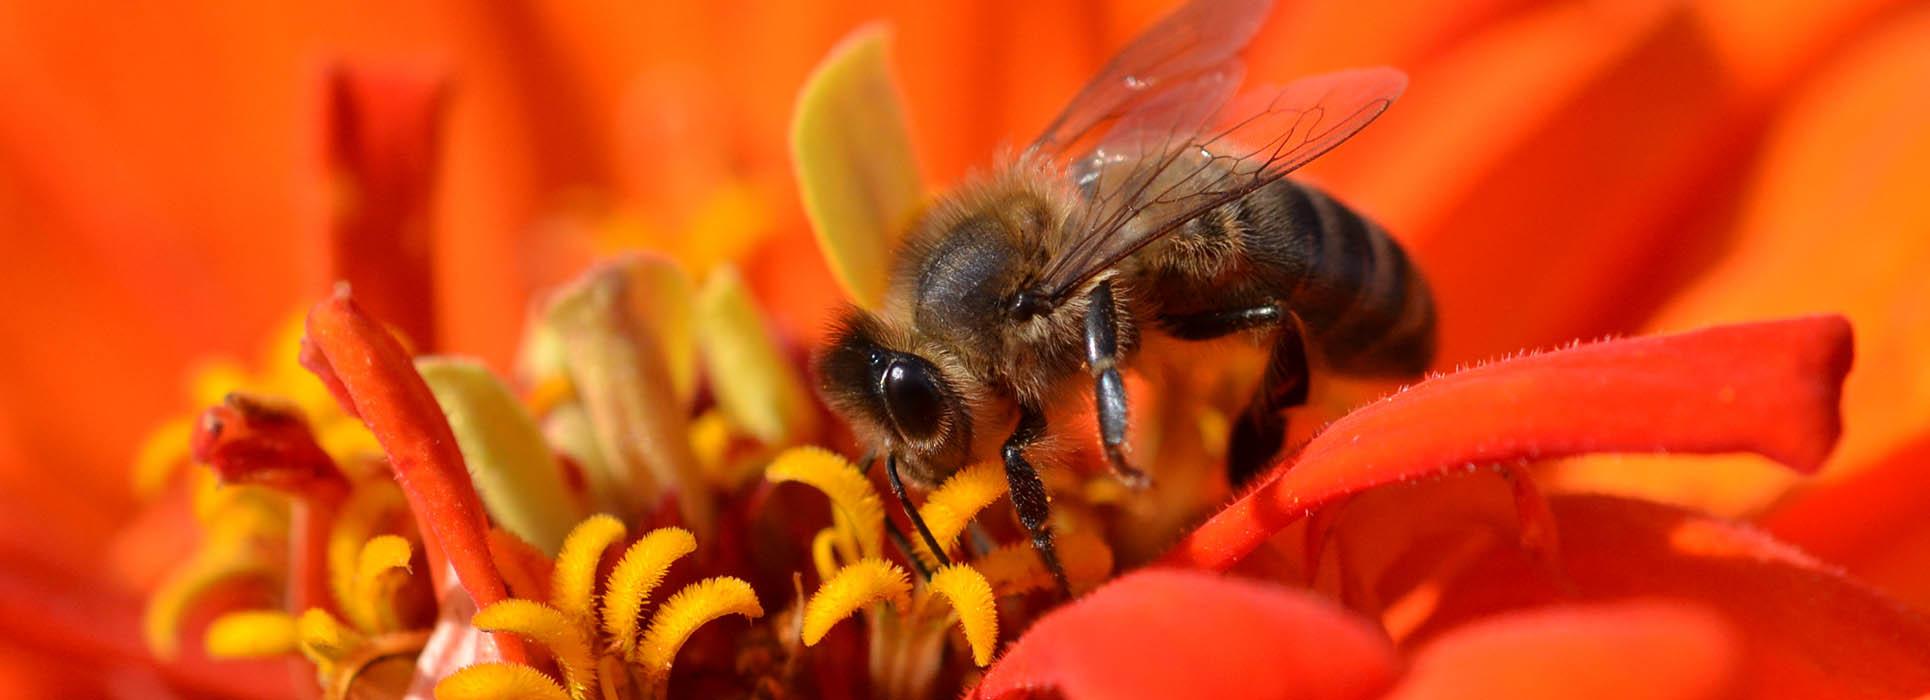 Une pratique respectueuse des abeilles et de l'environnement